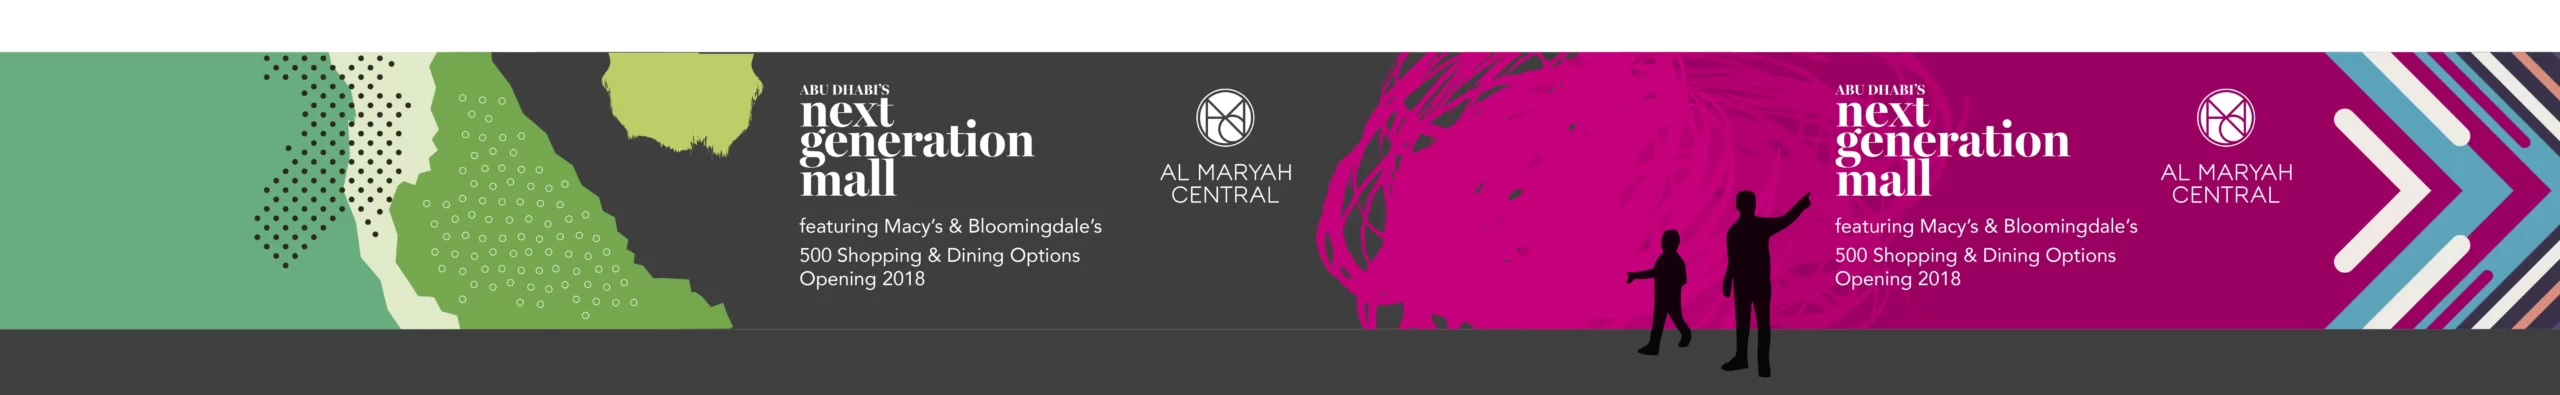 Al Maryah Central logo hoarding pattern